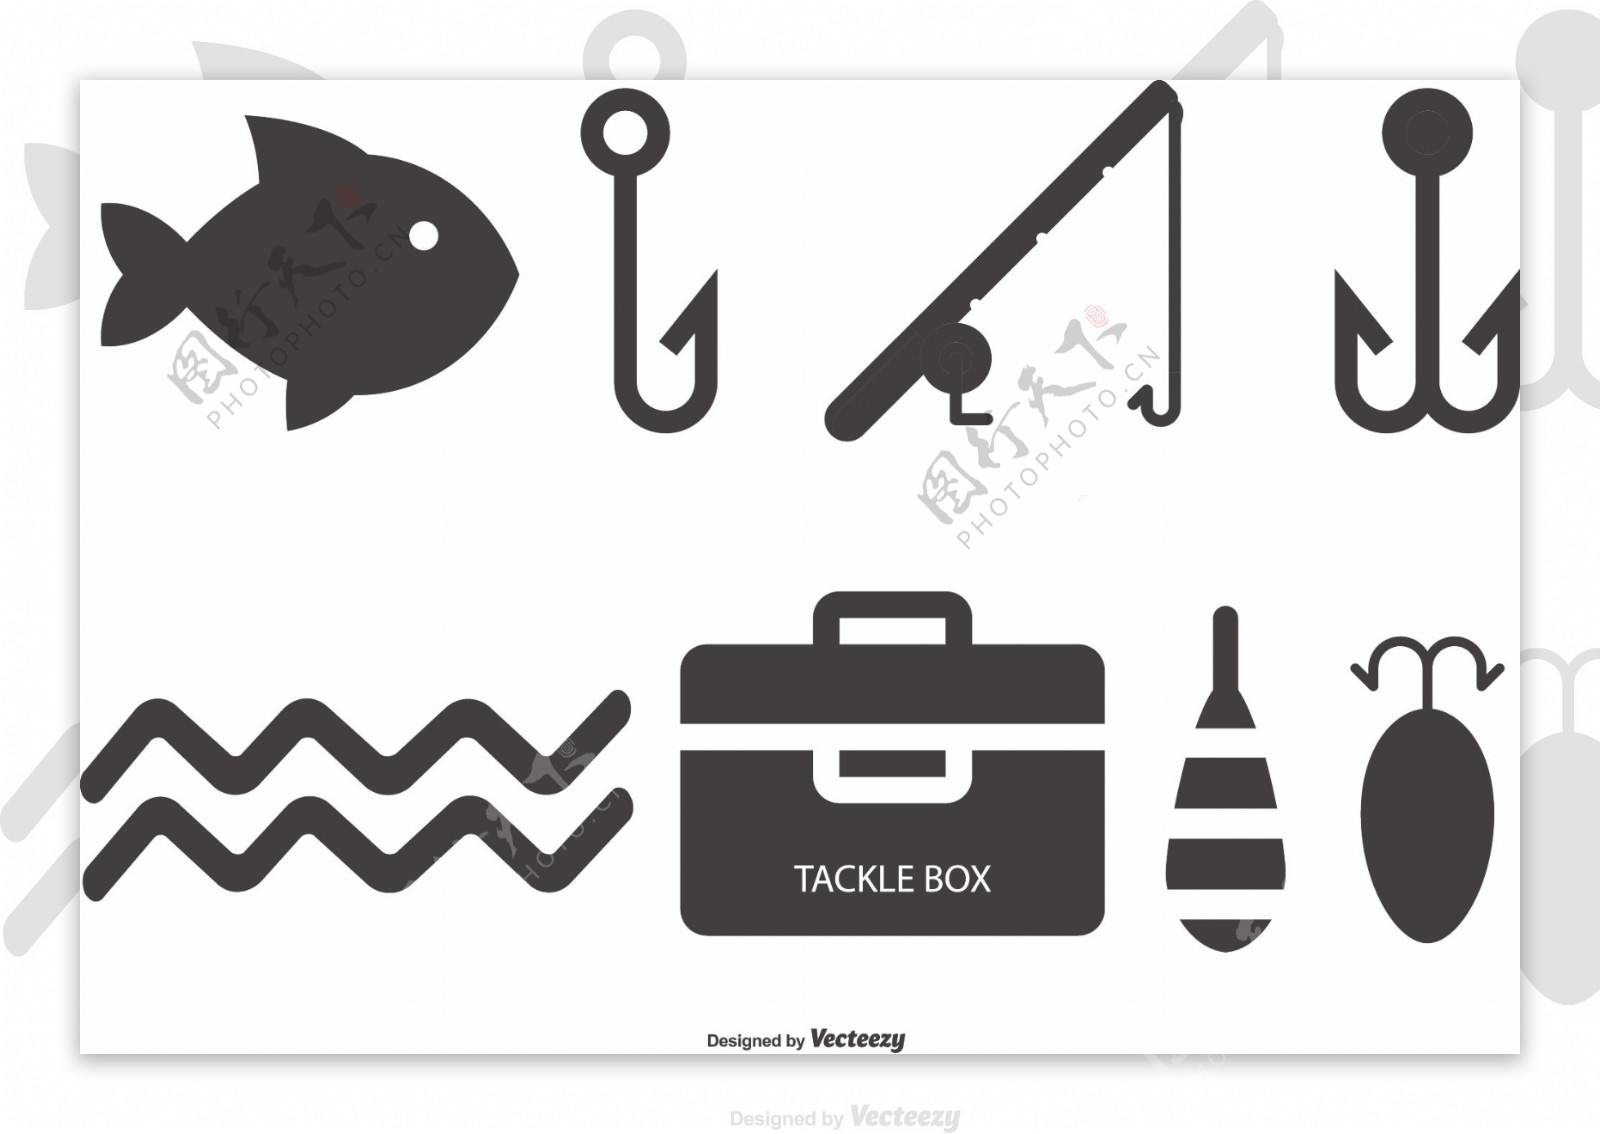 扁平钓鱼素材图标